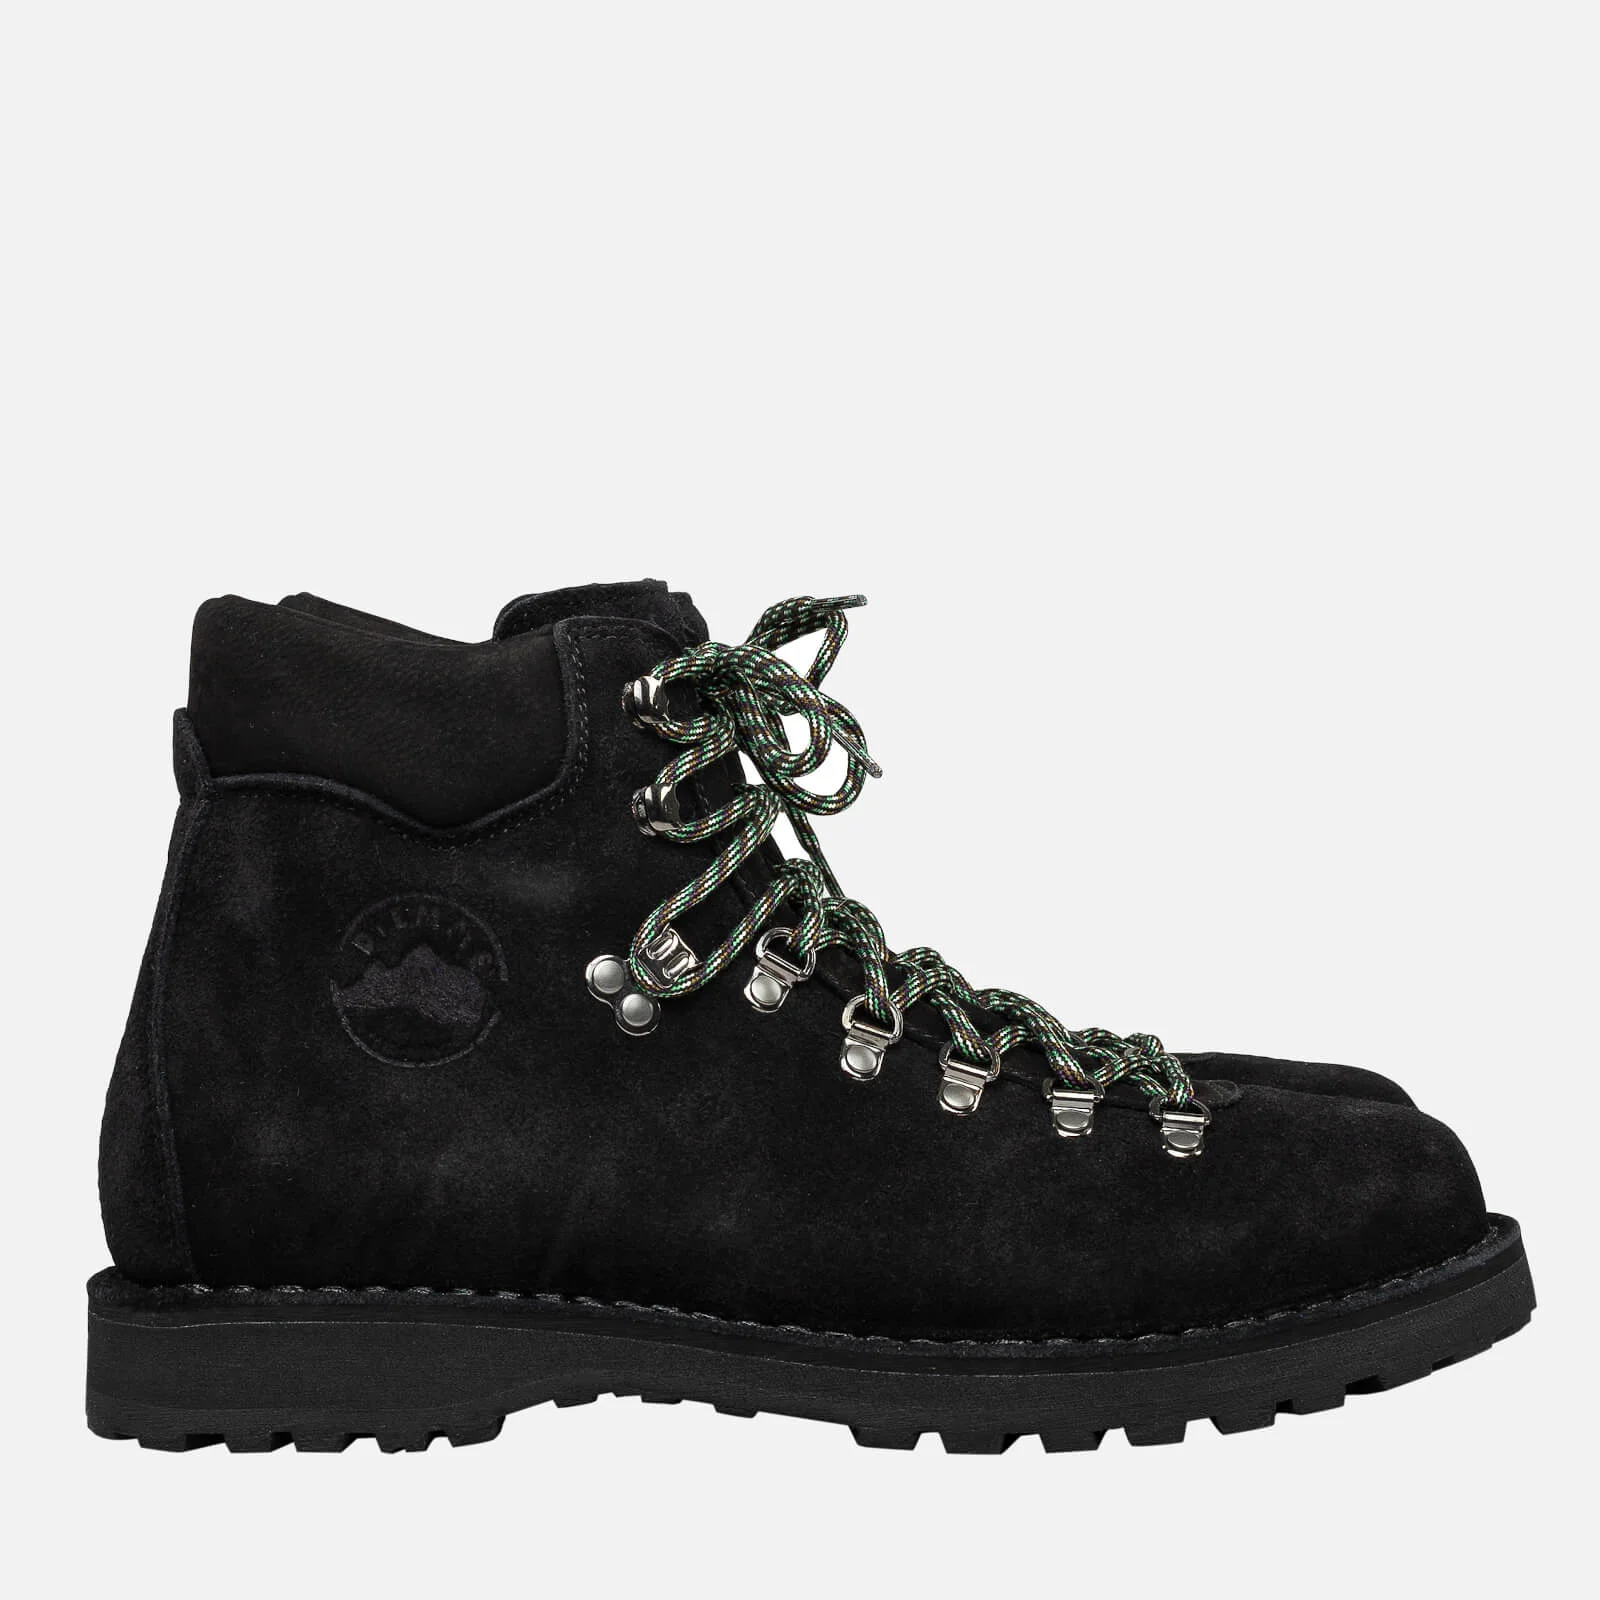 Diemme Women's Roccia Vet Suede Hiking Style Boots - Black Image 1